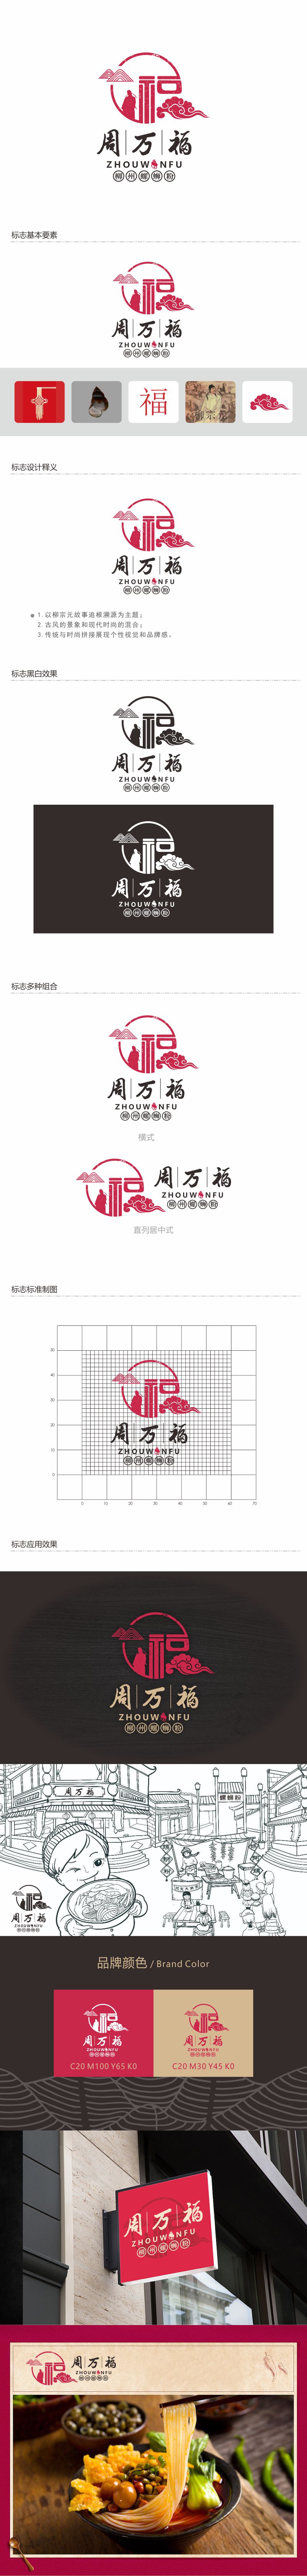 郑锦尚的周万福logo设计